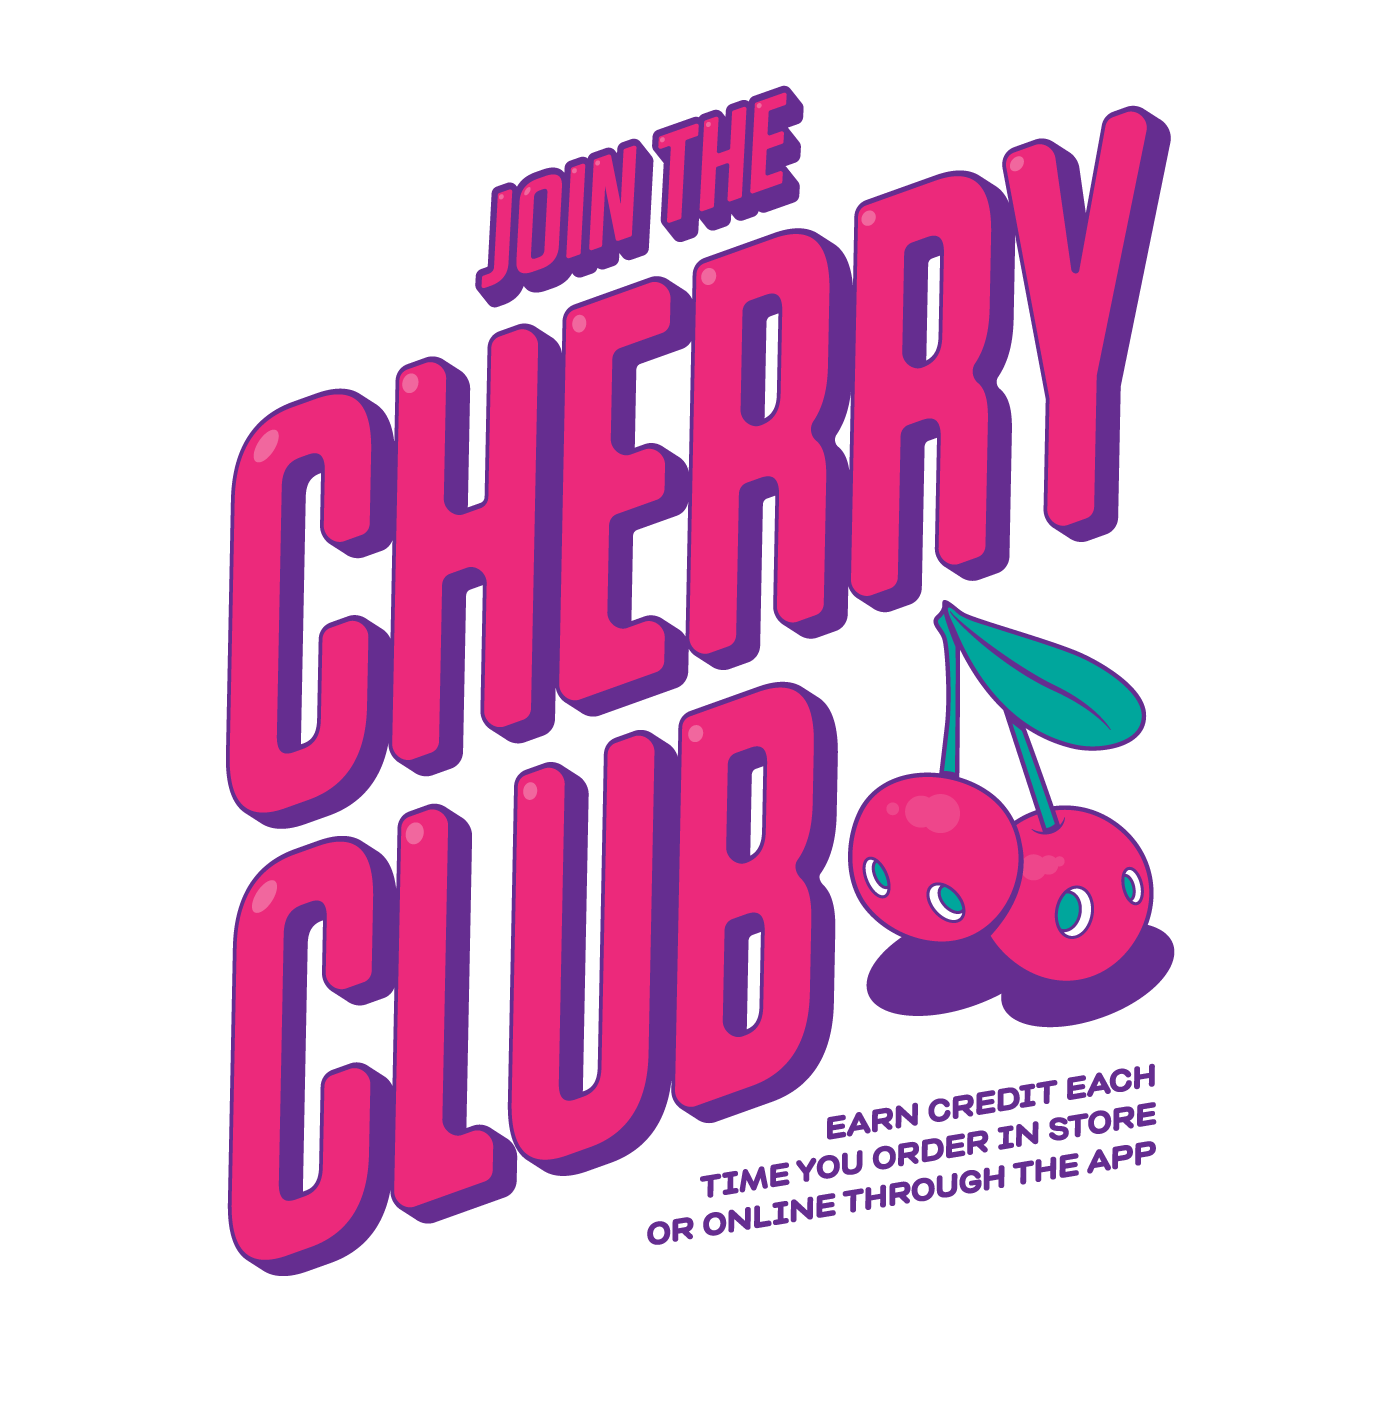 Rice Rice Baby Cherry Club